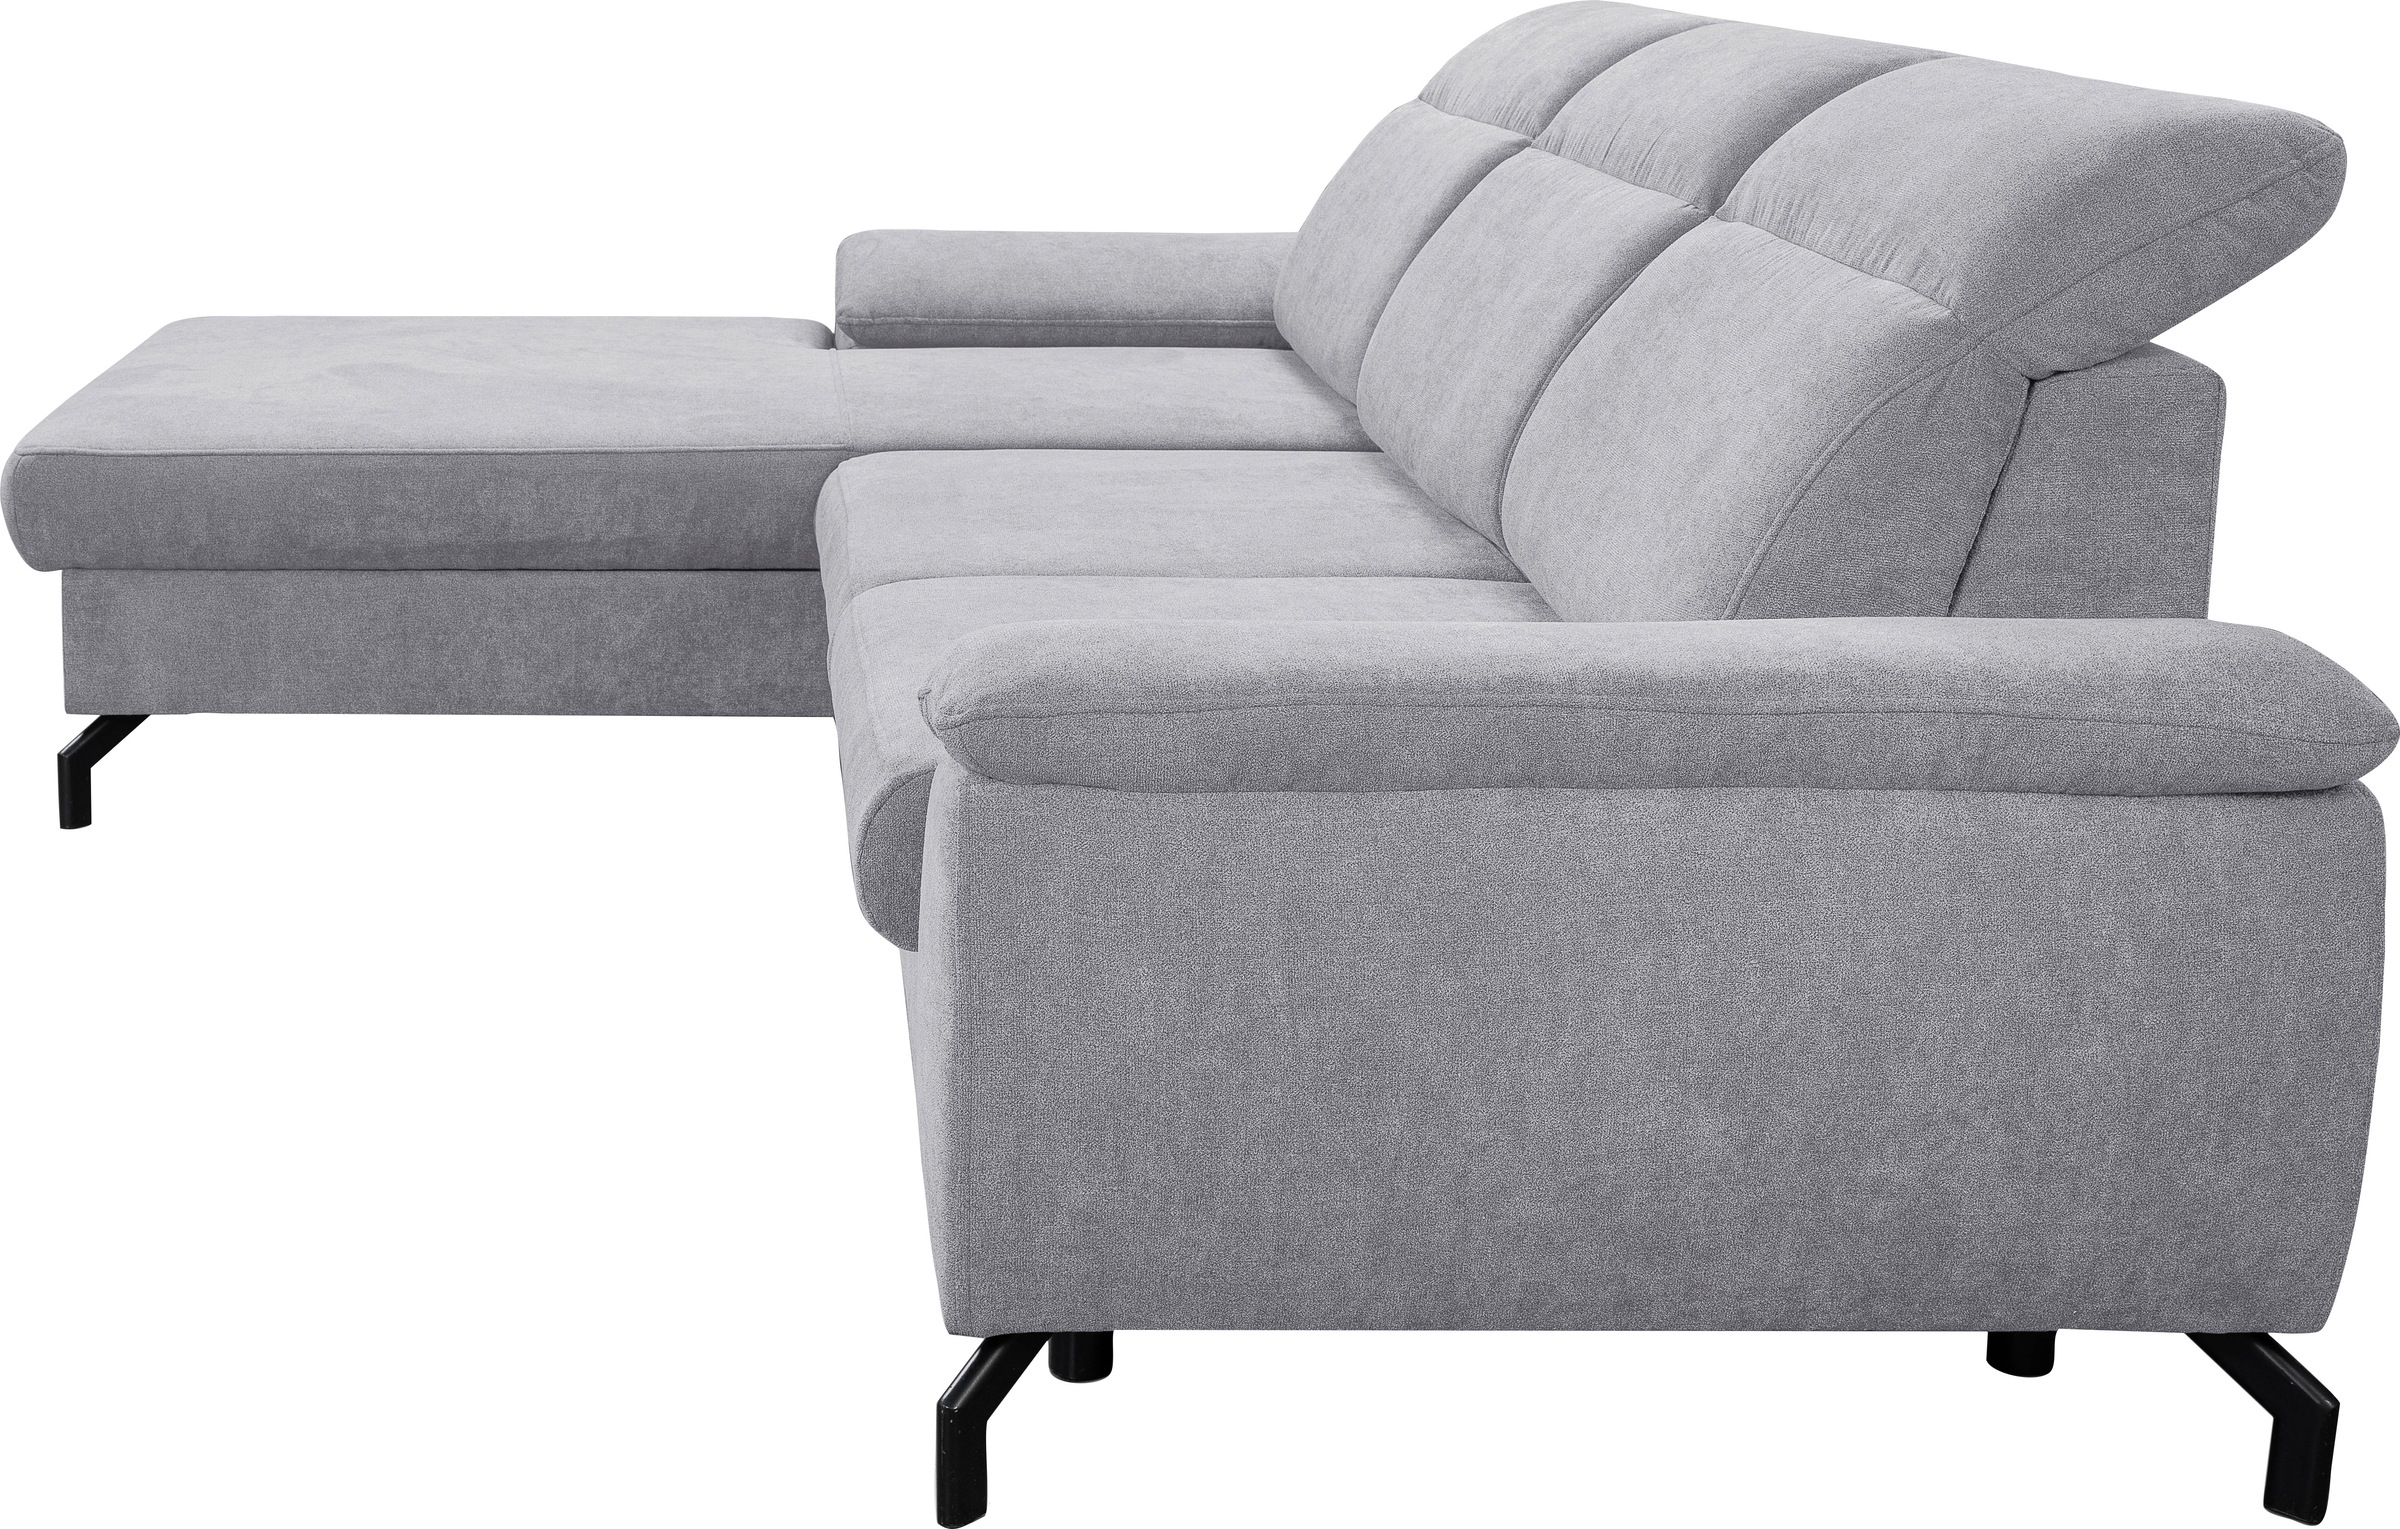 WERK2 Ecksofa »Panama L-Form«, Modernes Sofa mit Schlaffunktion, Bettkasten, Kopfteile verstellbar